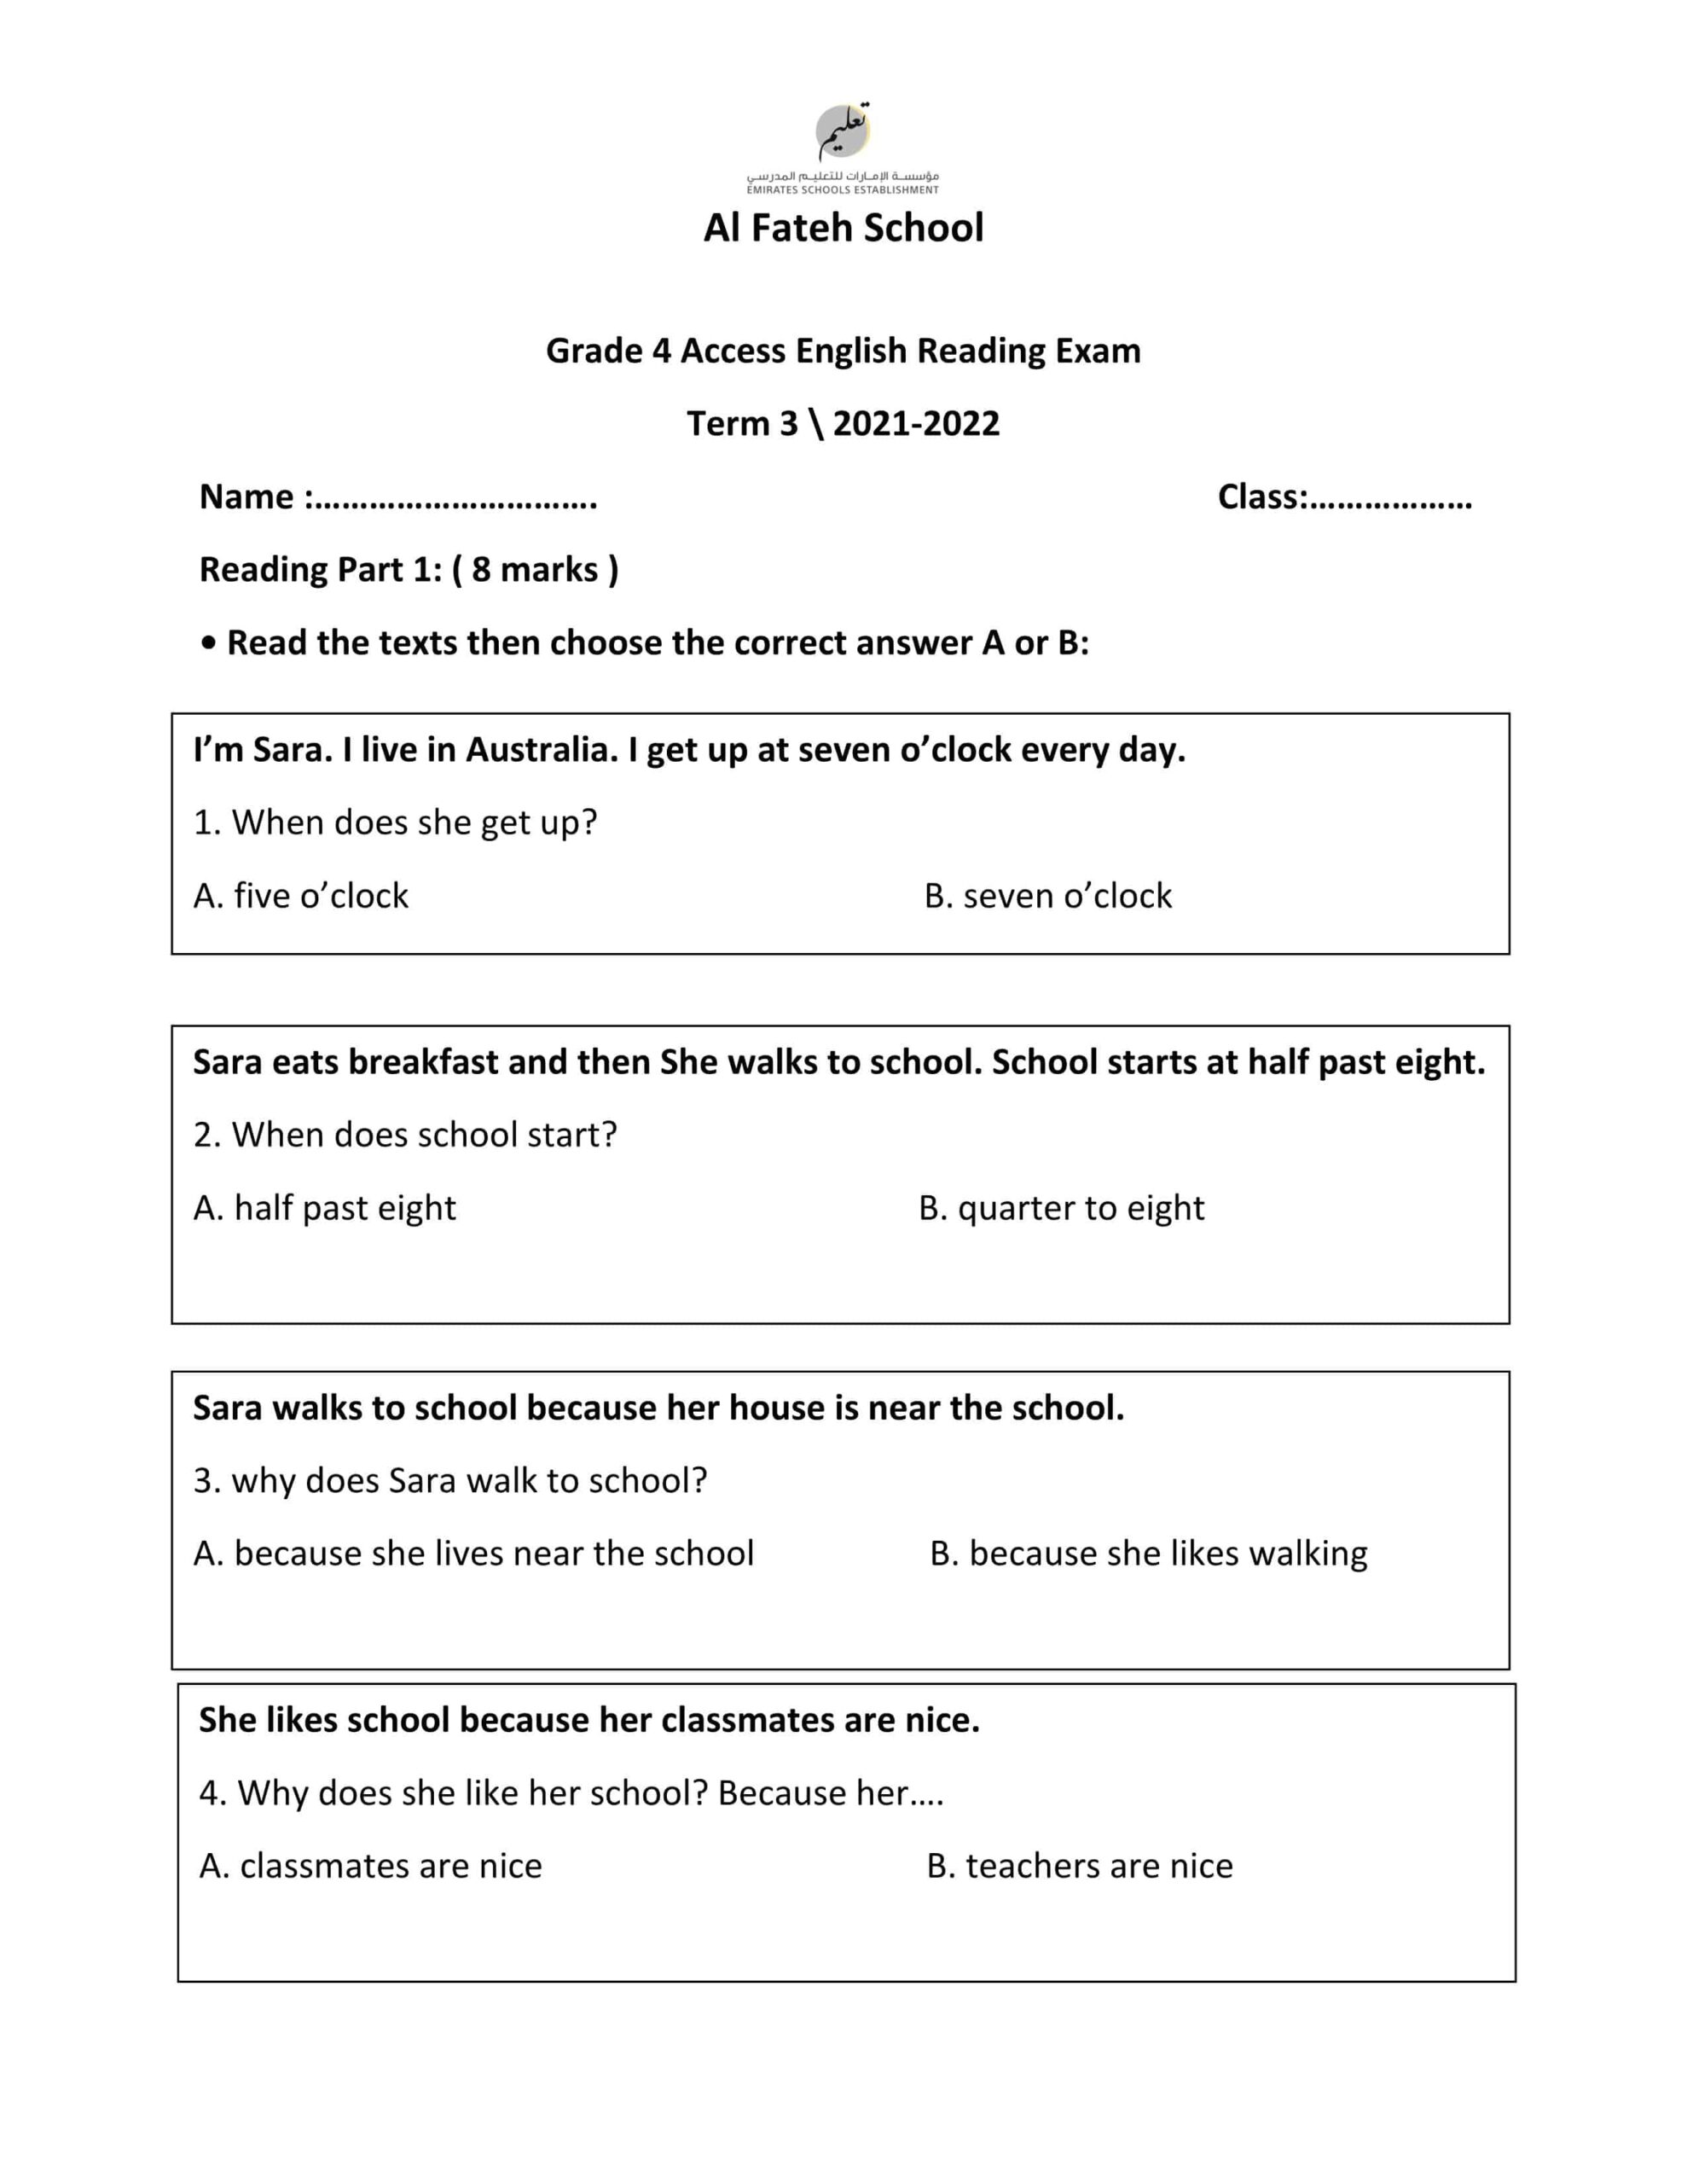 أوراق عمل Reading Exam اللغة الإنجليزية الصف الرابع